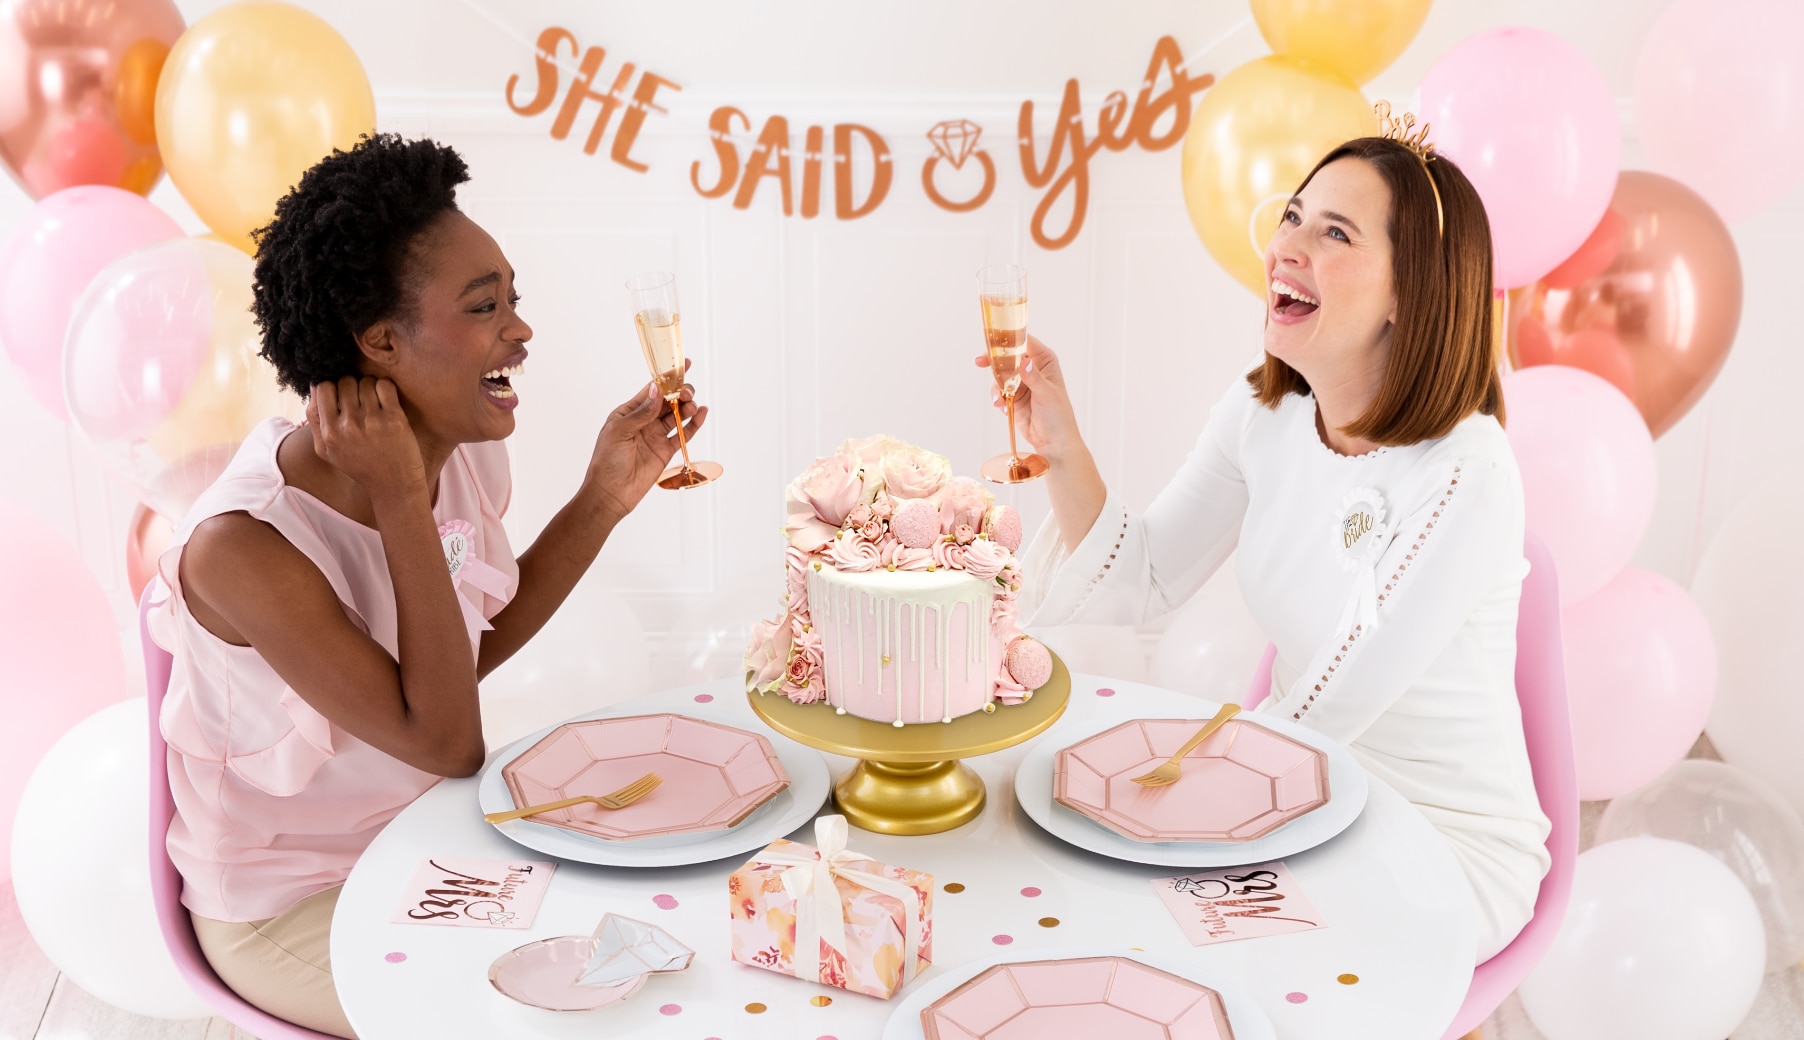 Deux femmes souriantes tenant des verres de champagne, assises à une table dans une pièce décorée de ballons et de vaisselle roses et d’une banderole avec le message « SHE SAID YES. »